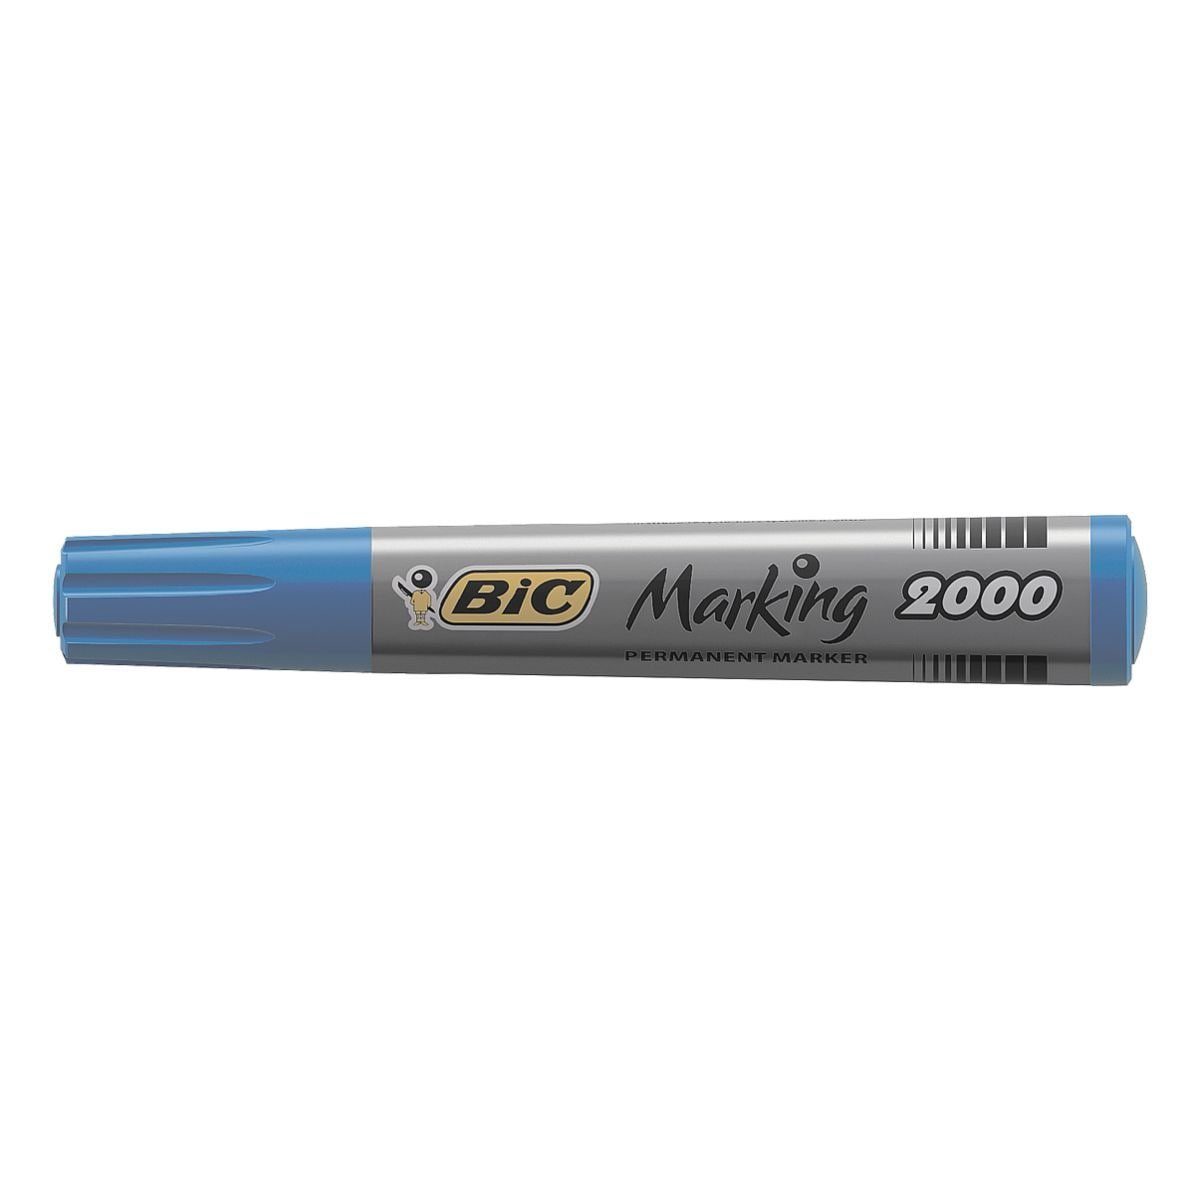 BIC Permanentmarker Marking blau offenlagerfähig (ISO 3 mit 2000, Austrocknungsschutz Wochen 554): mind